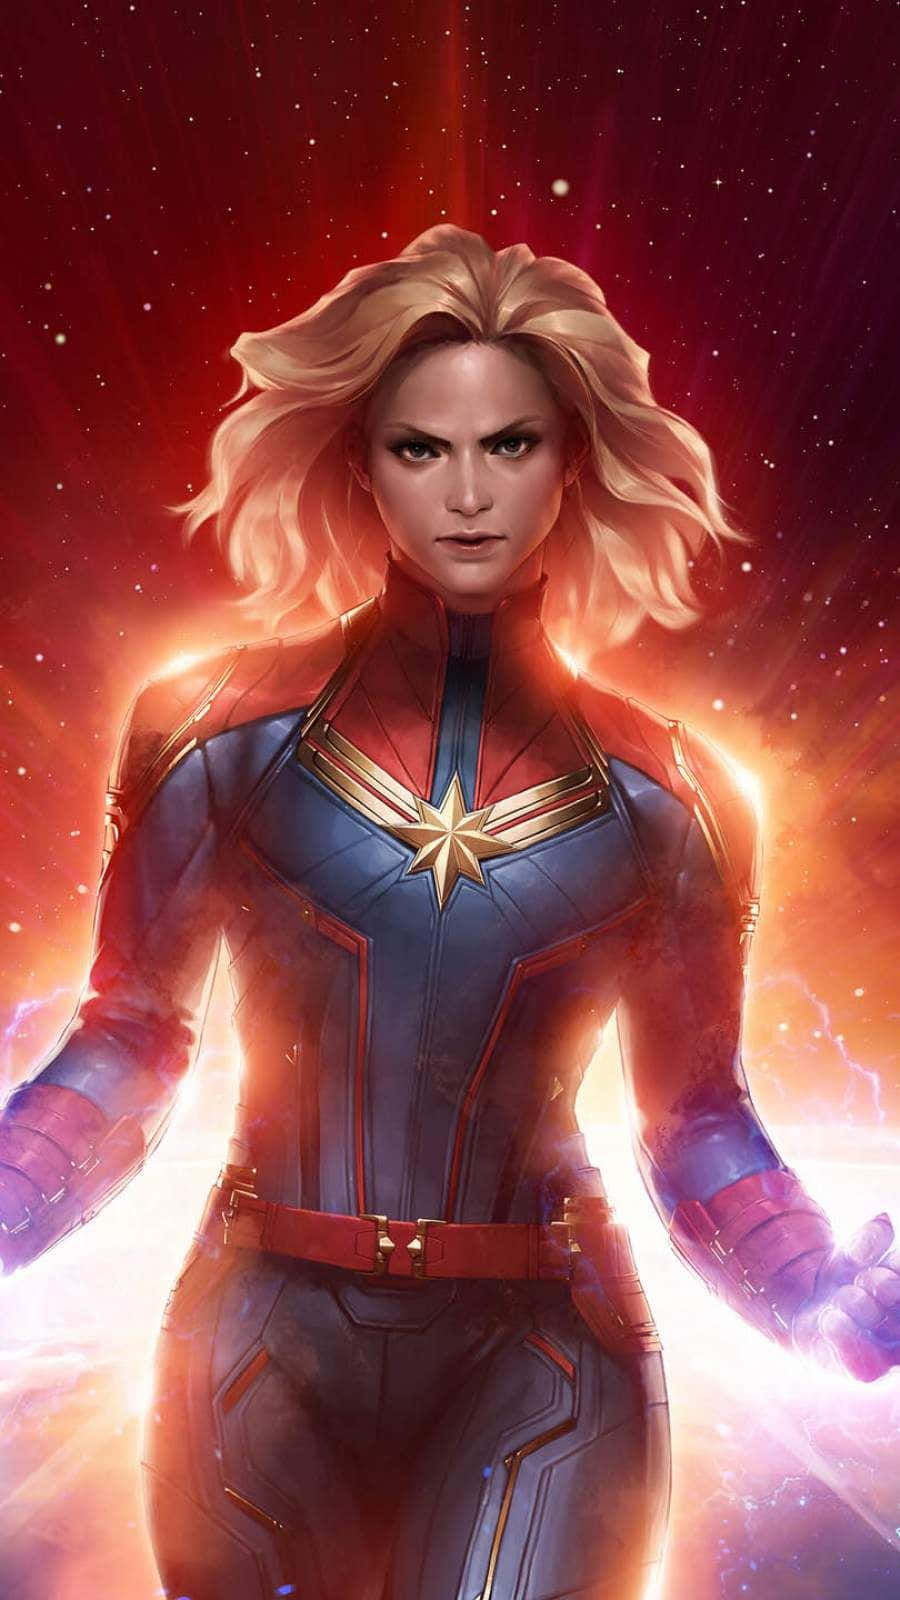 Bildpå Brie Larson I Hennes Ikoniska Roll Som Captain Marvel. Wallpaper